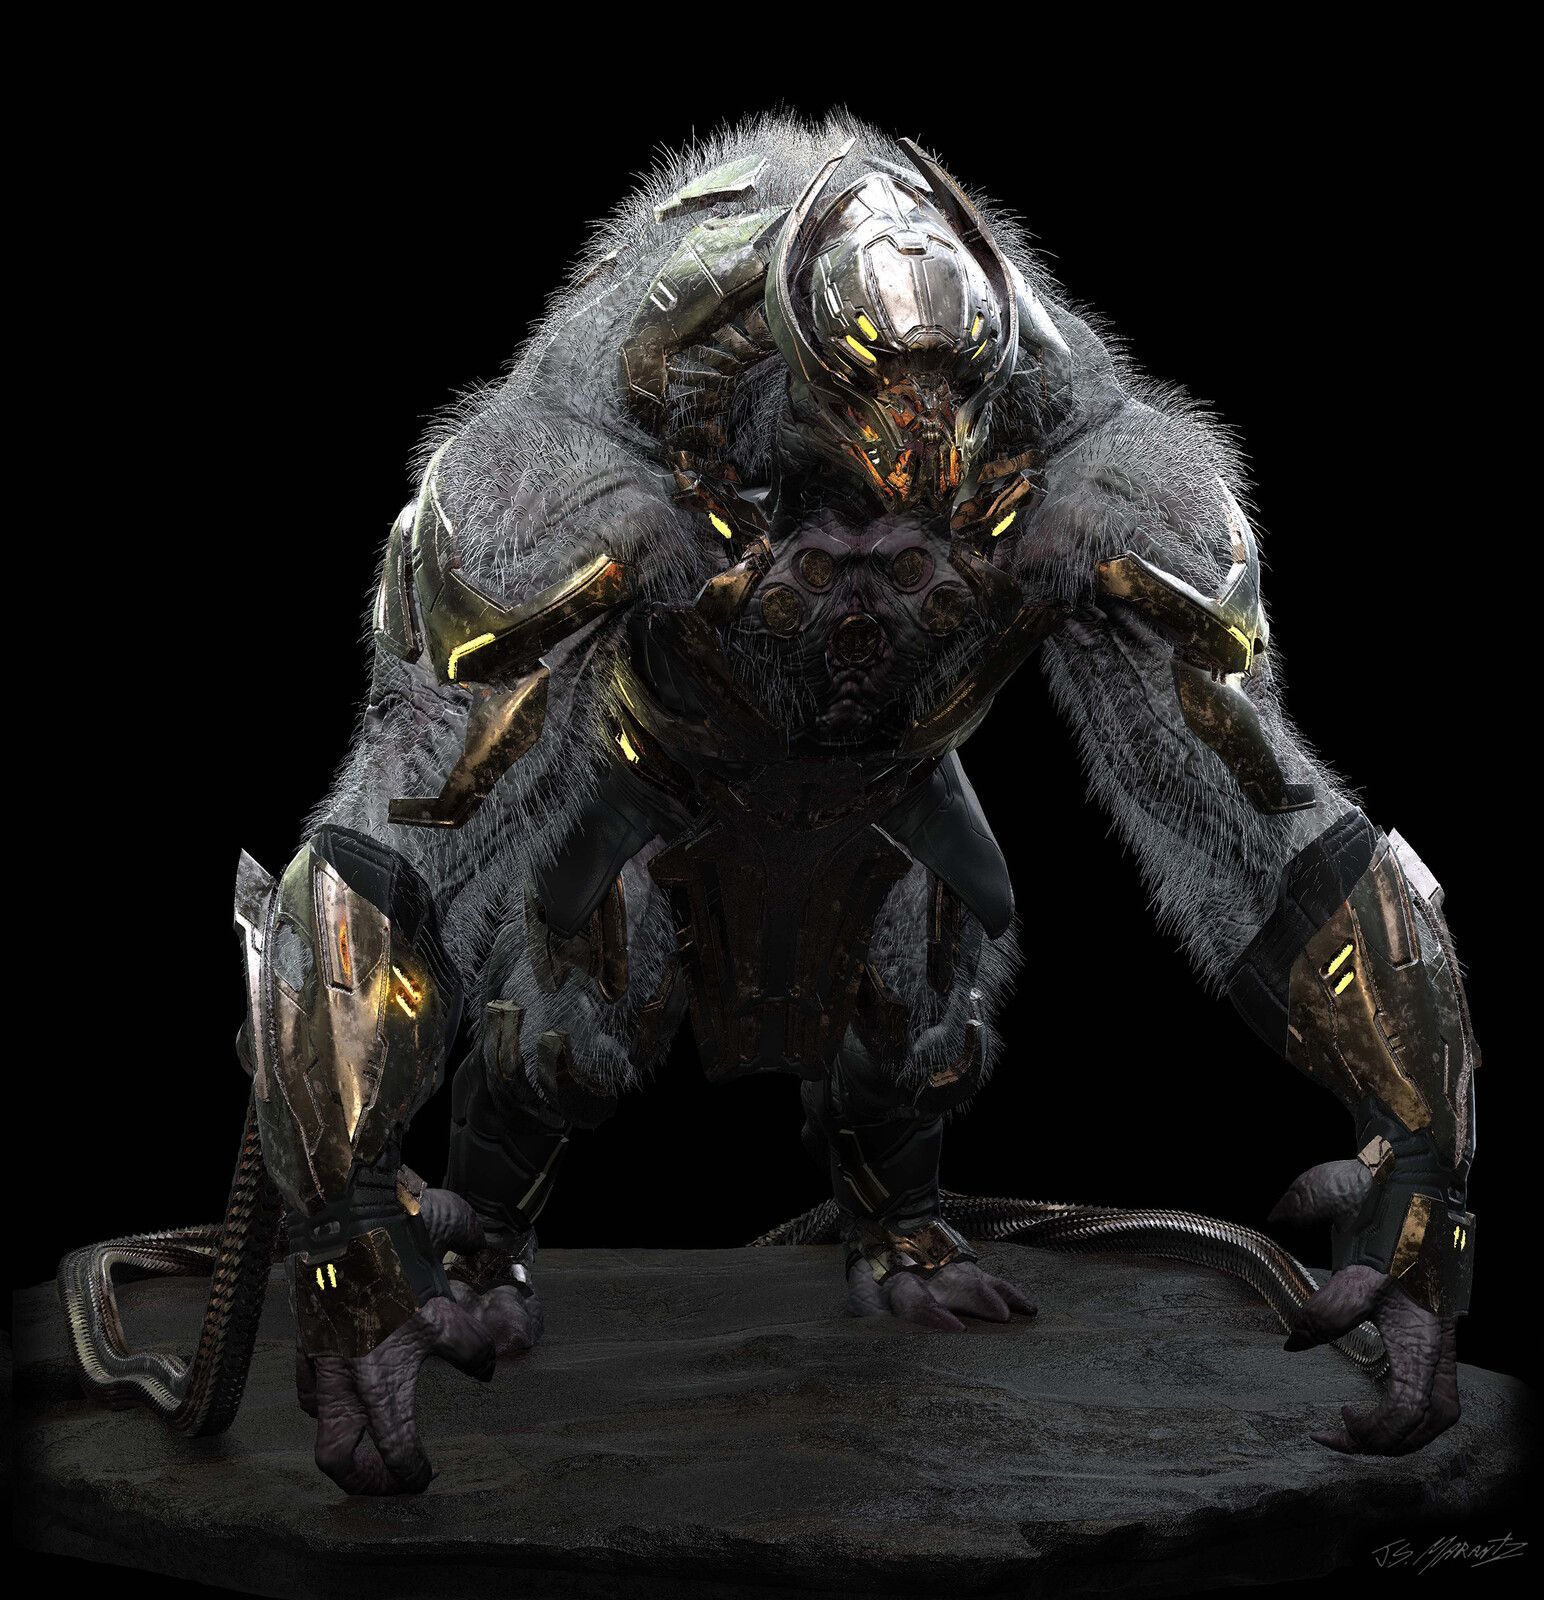 Avengers Endgame: Chitauri Gorilla Design Artwork 8l0Vo. Monster Concept Art, Avengers, Alien Character